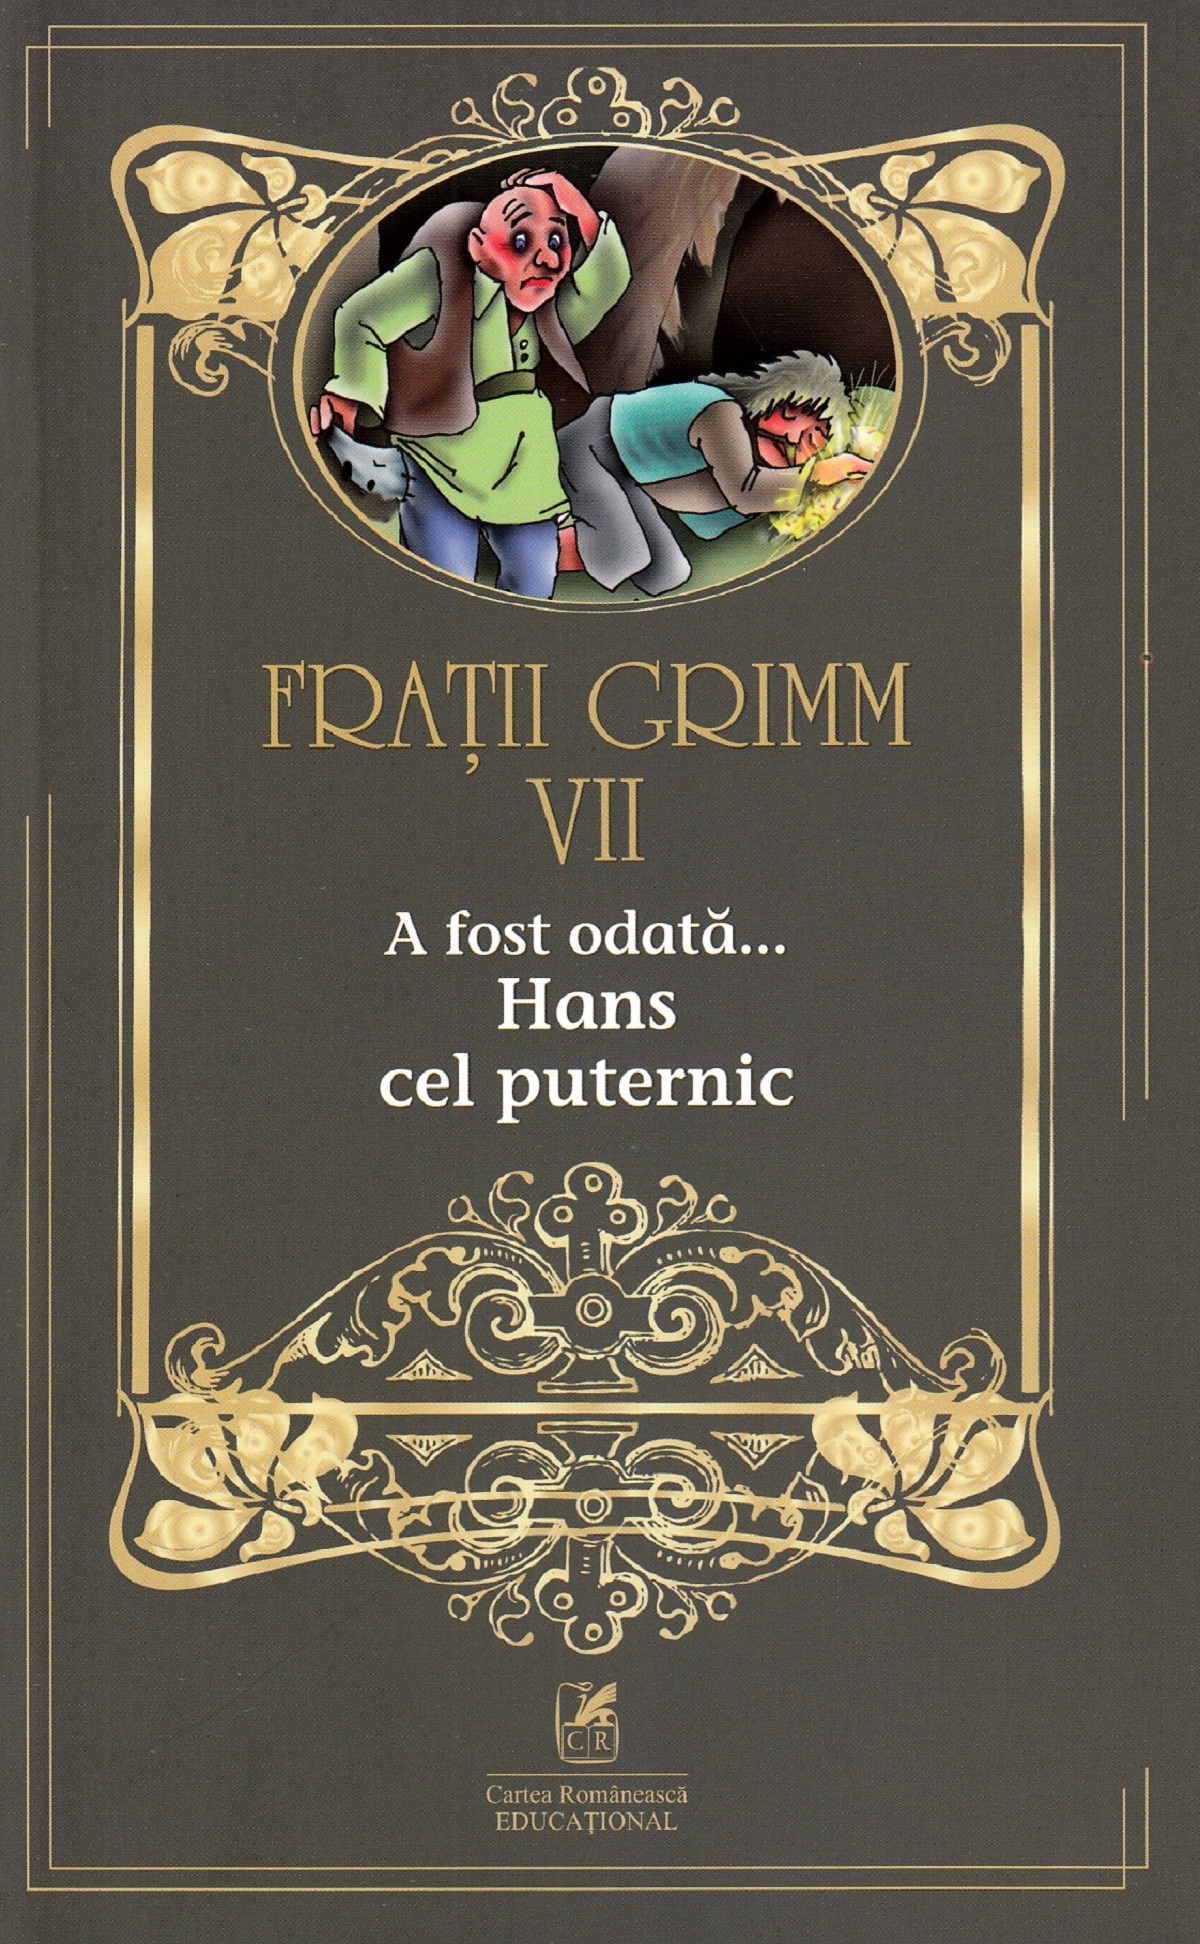 A fost odata…Hans cel puternic | Fratii Grimm Cartea Romaneasca educational Carte